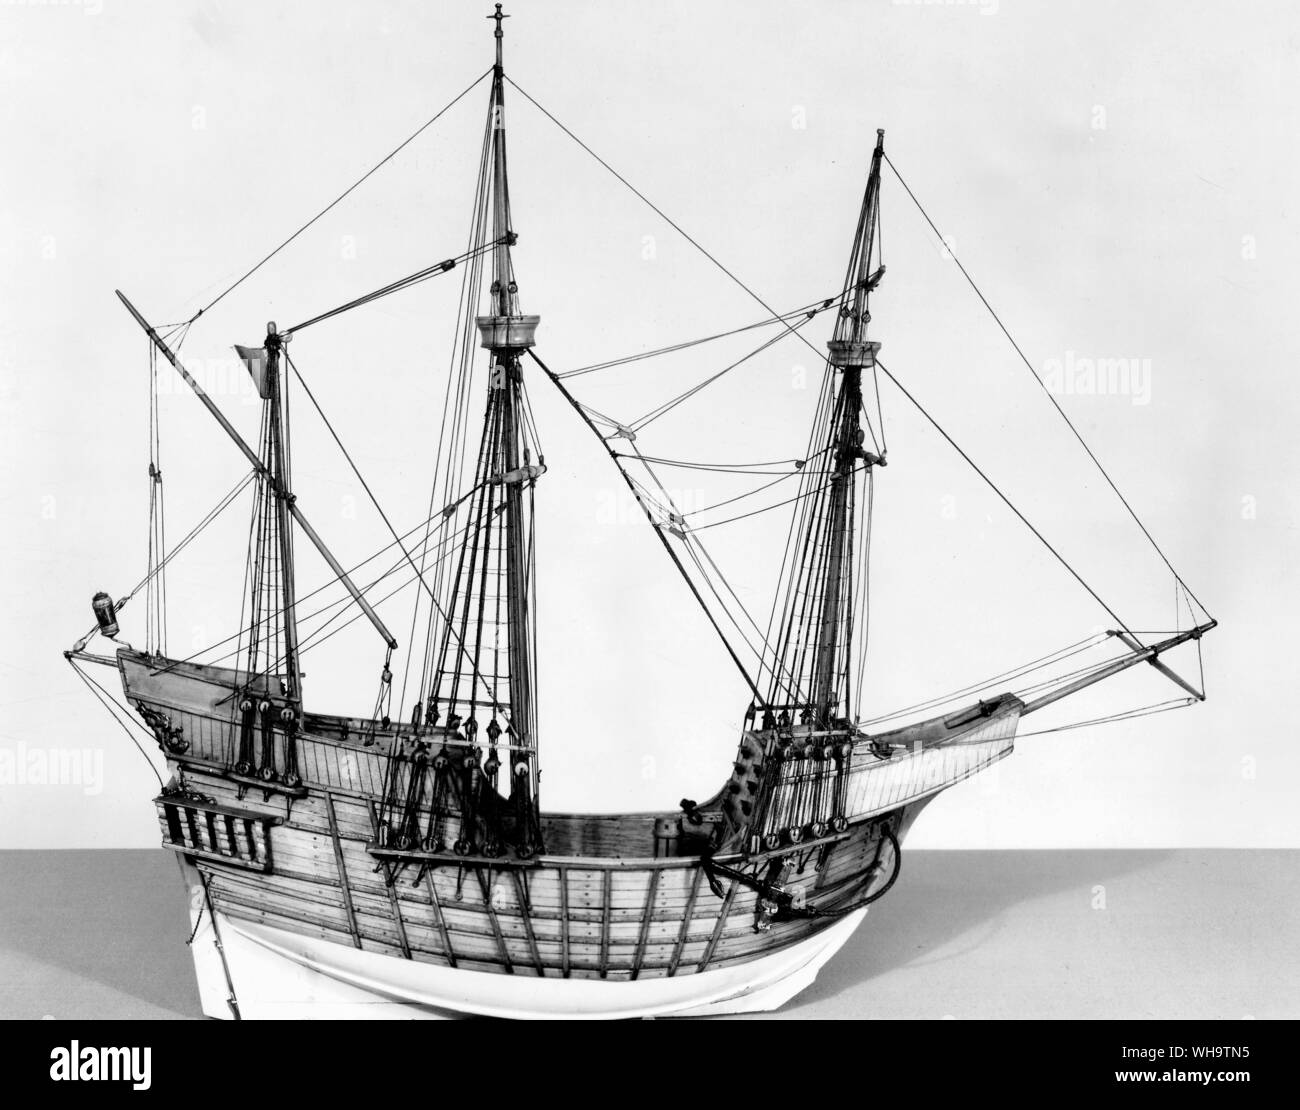 Merchant ship, mid-16th century. Stock Photo